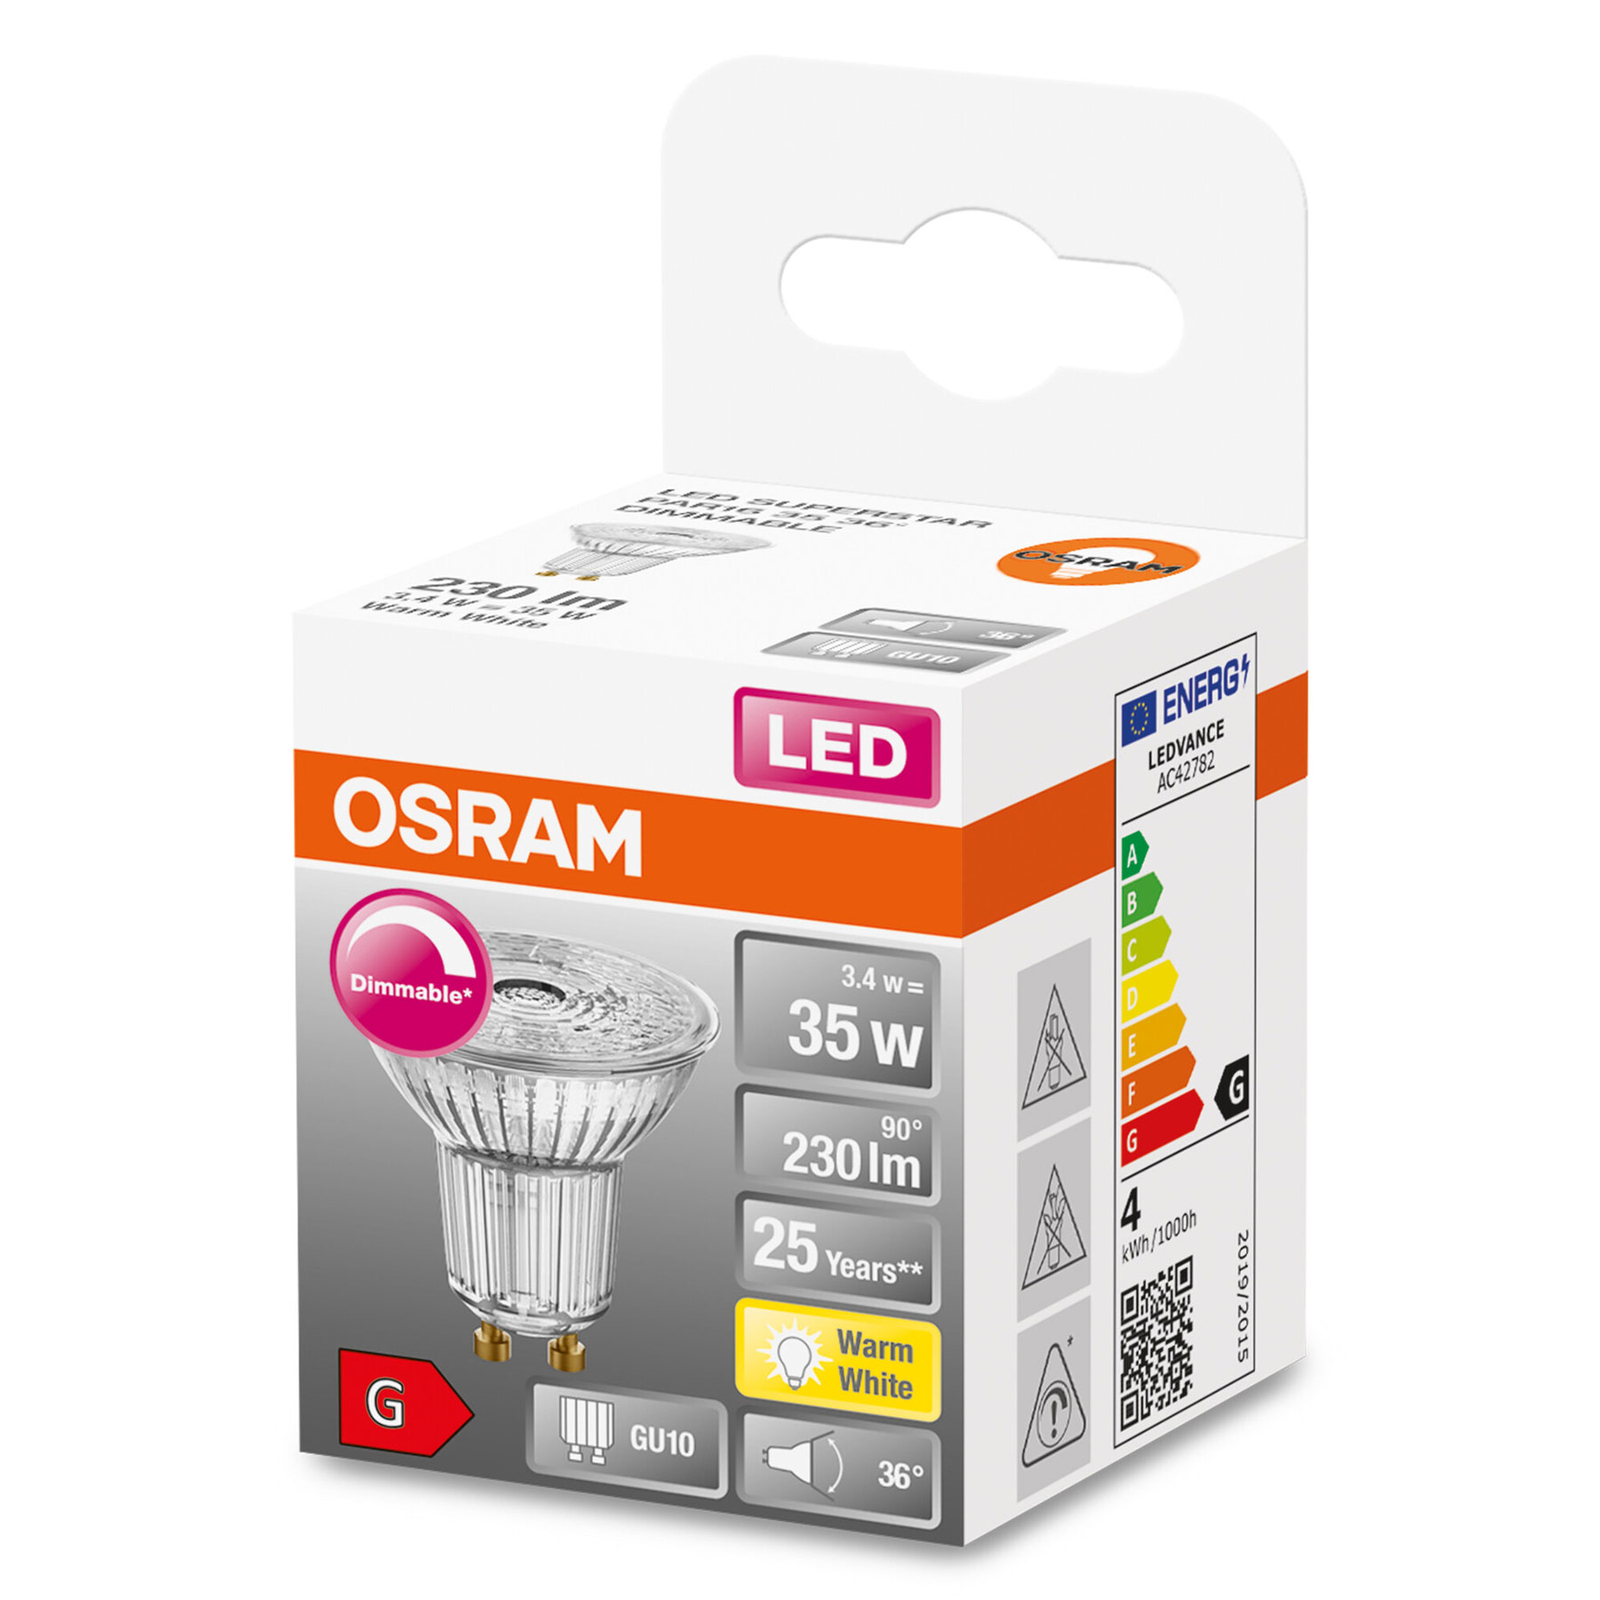 OSRAM LED refletor de vidro GU10 3.4W 927 36° regulável